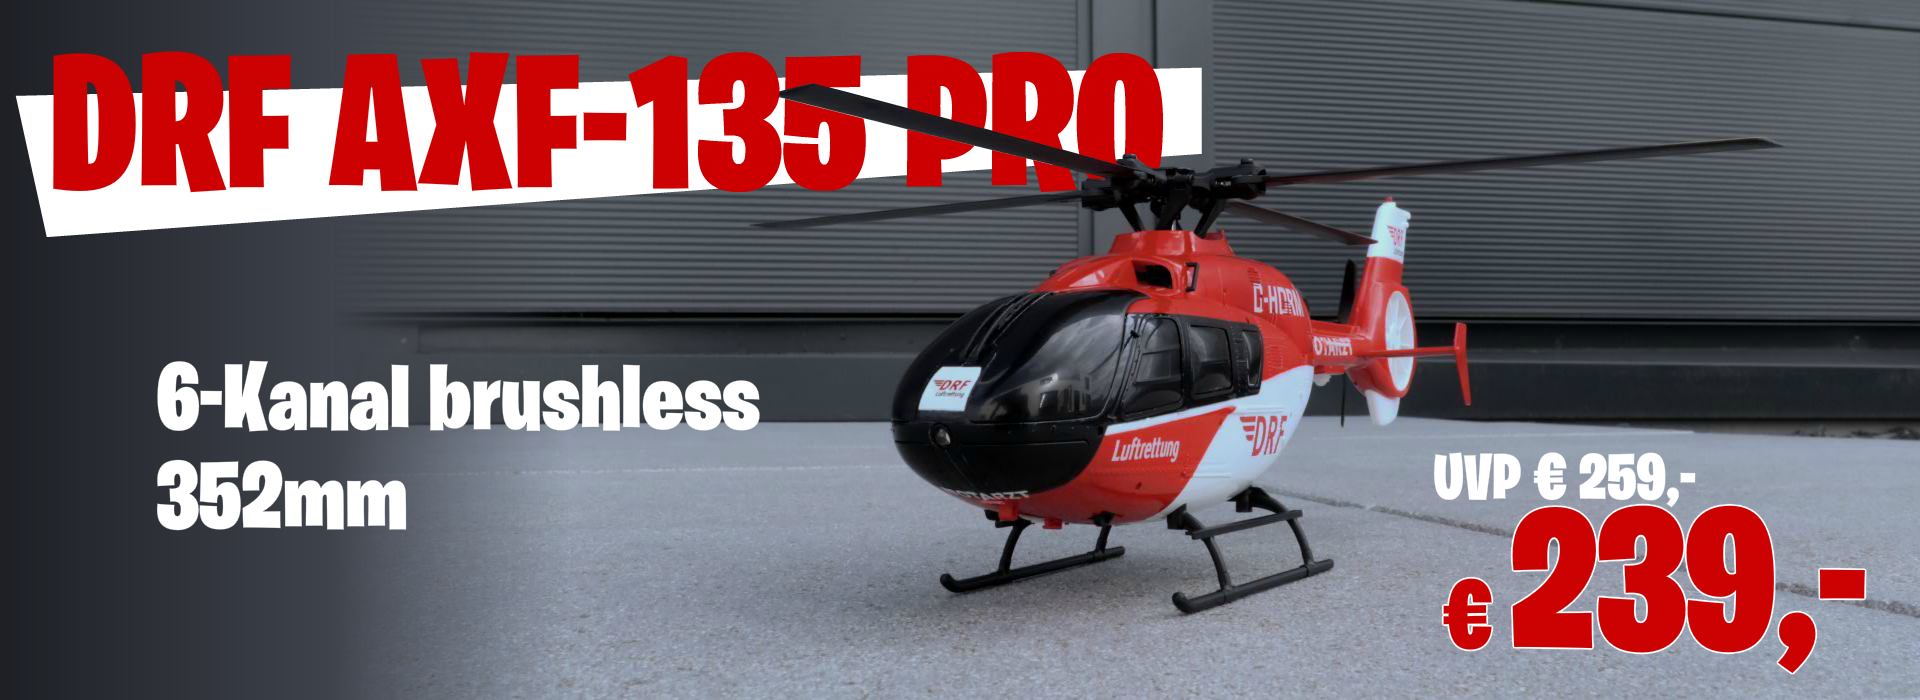 AFX 135 PRO brushless Helikopter im rc-mod-shop günstig kaufen